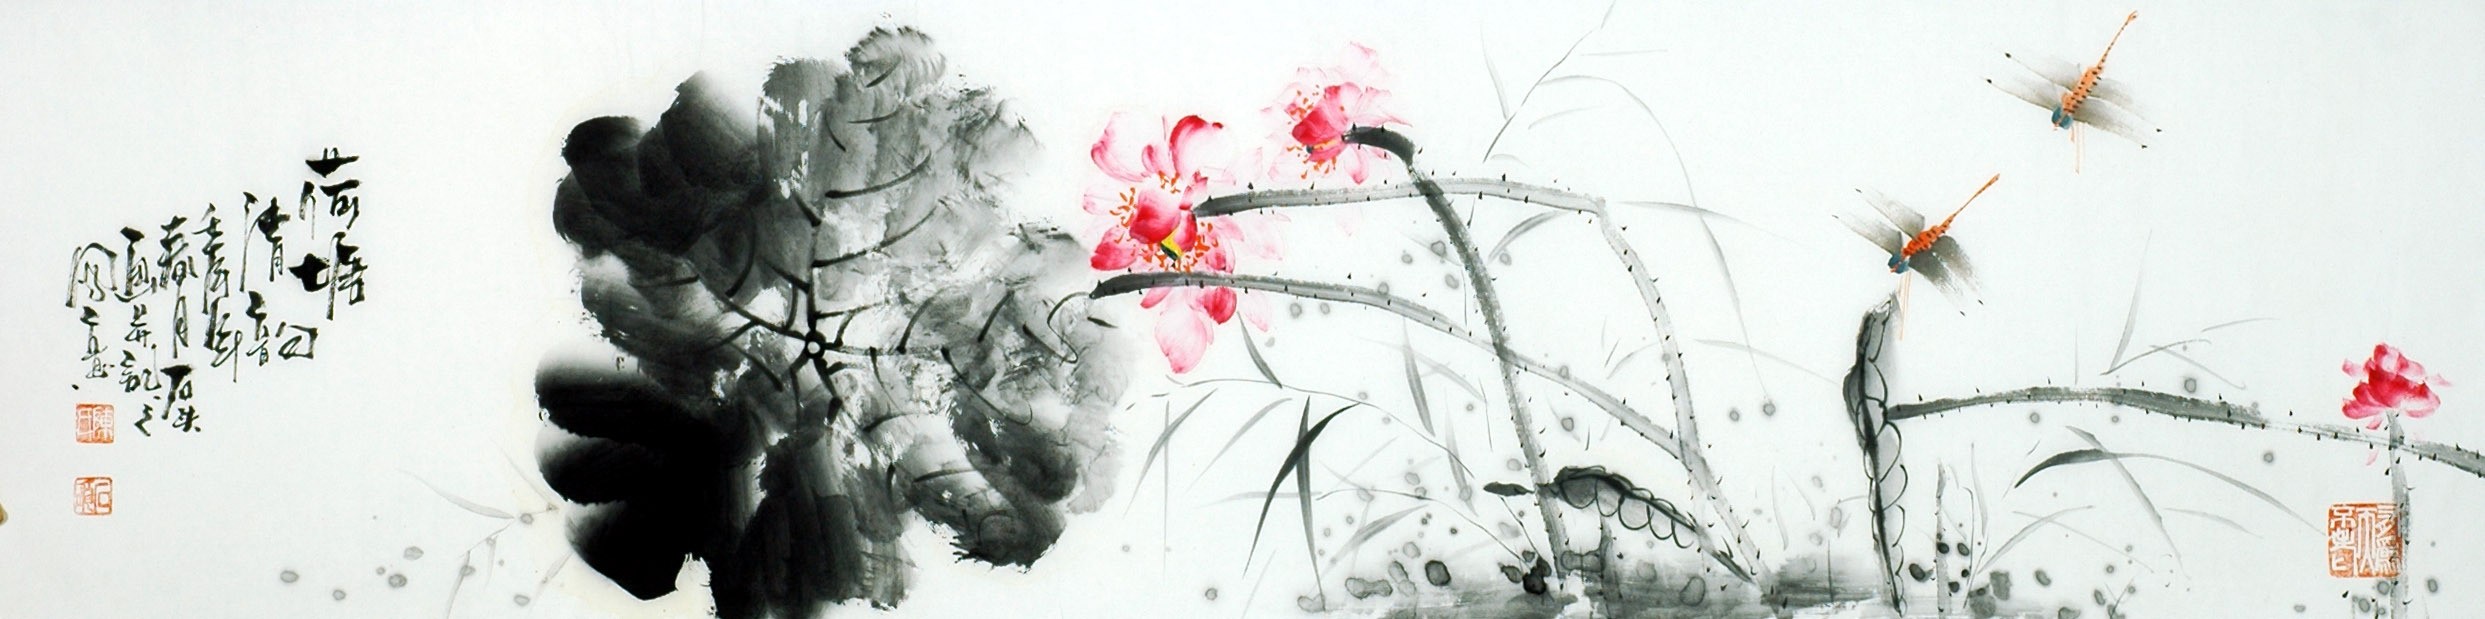 Chinese Lotus Painting - CNAG009131